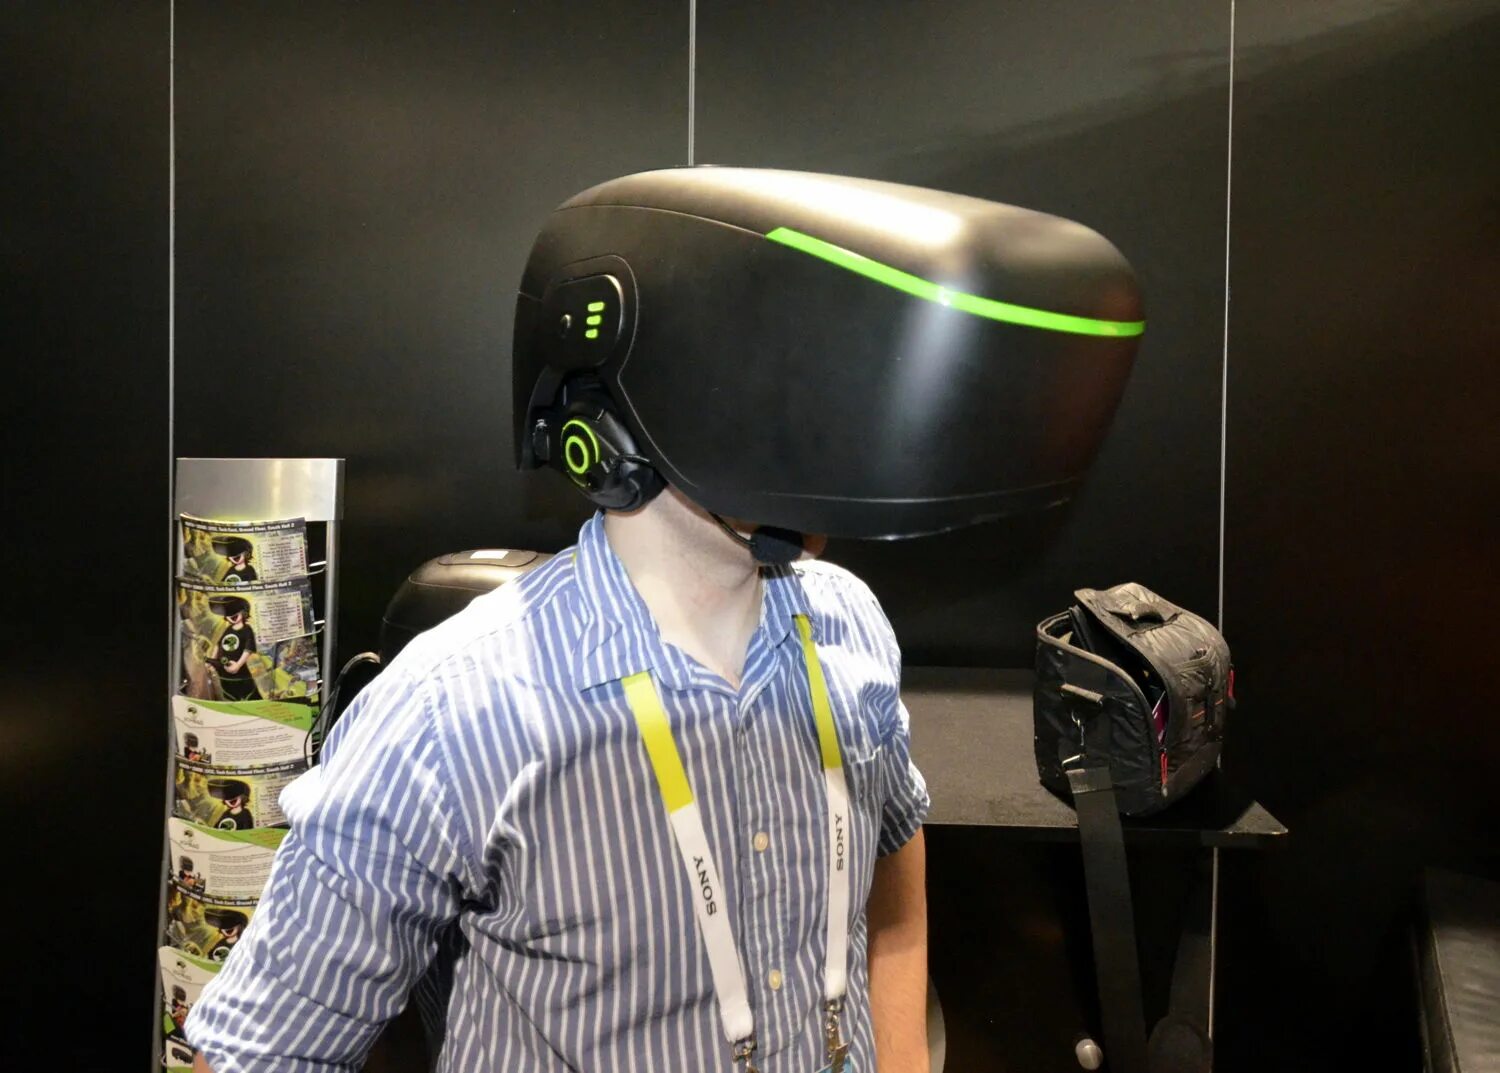 VR class hr11. Виртуальная реальность с полным погружением. Оборудование для погружения в виртуальную реальность. VR class оборудование.